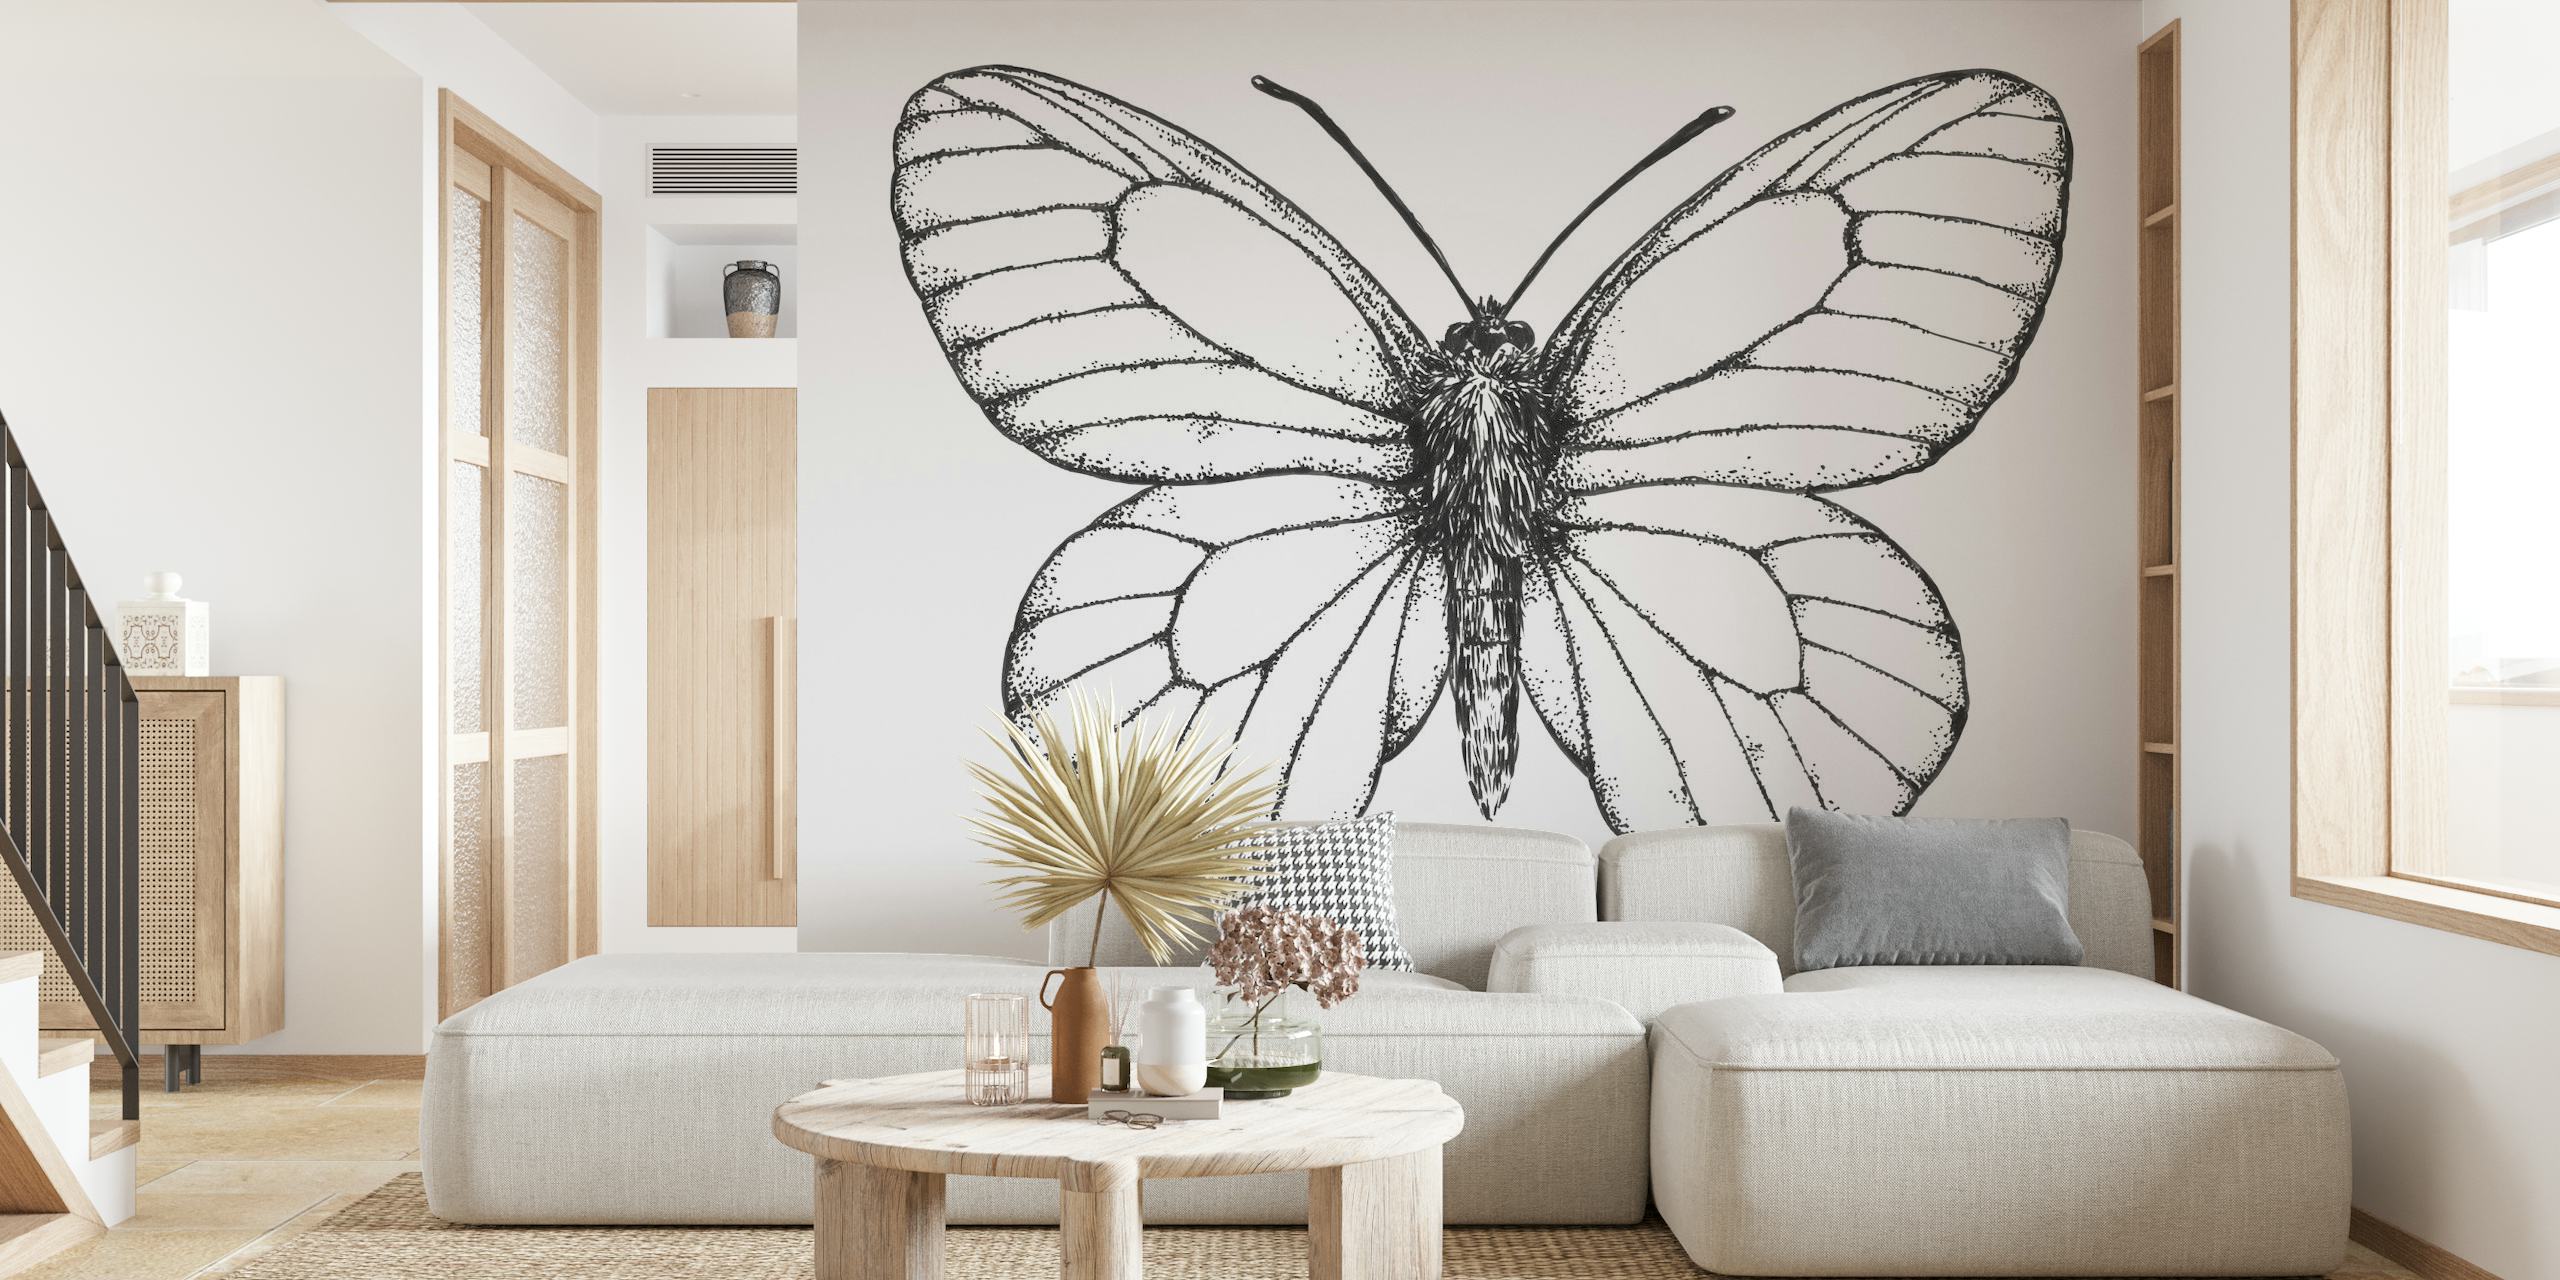 Fotomural vinílico de parede de borboleta com veios pretos